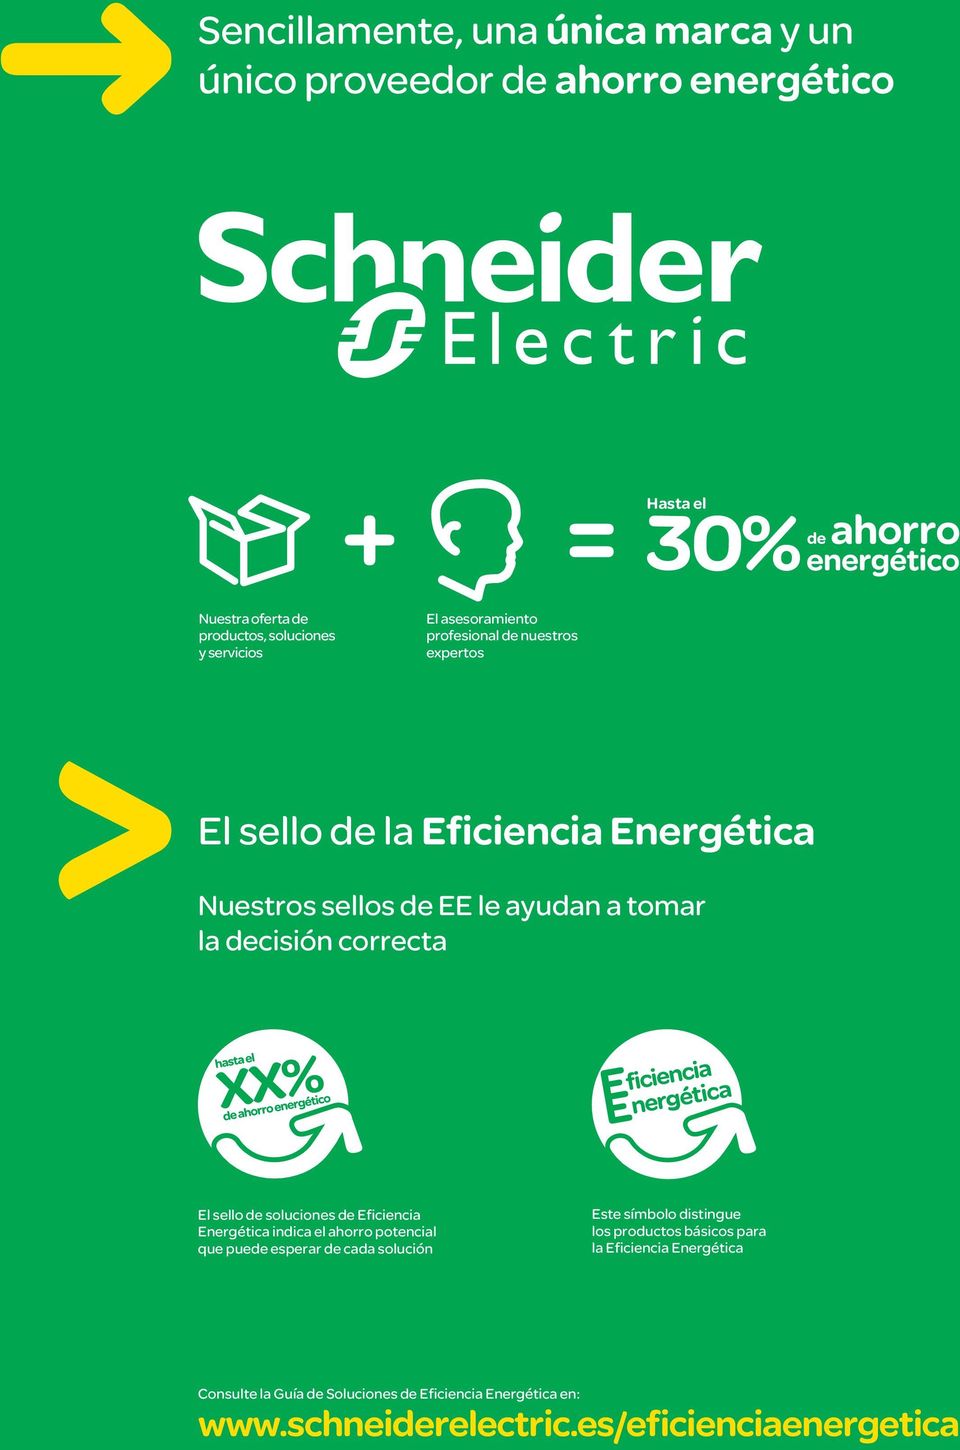 correcta El sello de soluciones de Eficiencia Energética indica el ahorro potencial que puede esperar de cada solución Este símbolo distingue